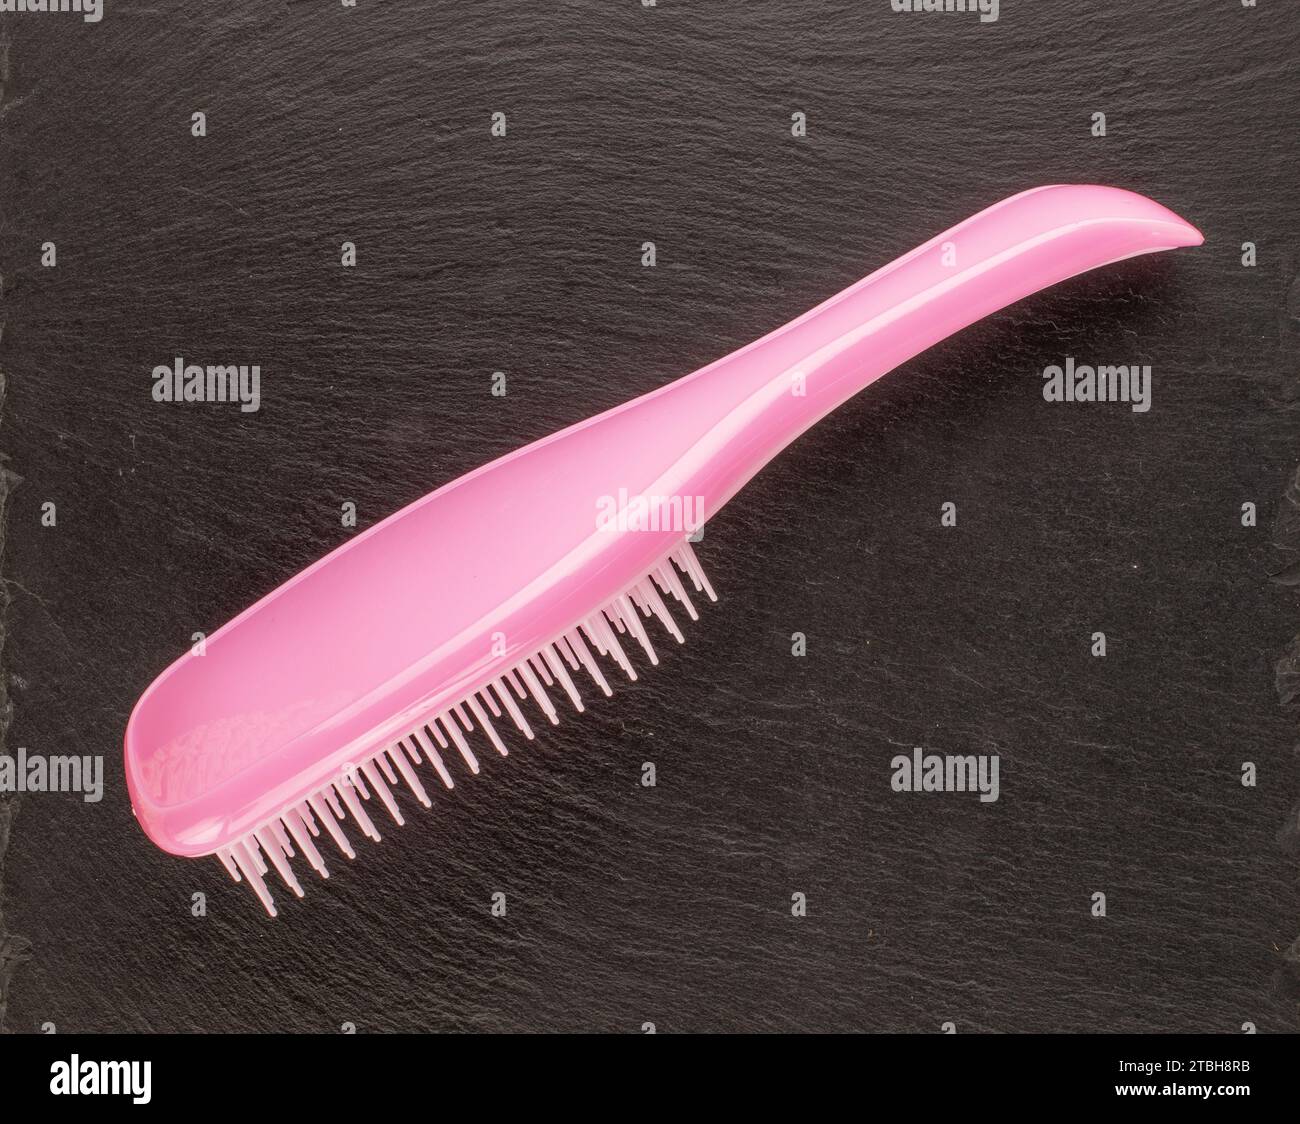 Une brosse à cheveux en plastique rose sur pierre d'ardoise, macro, vue de dessus. Banque D'Images